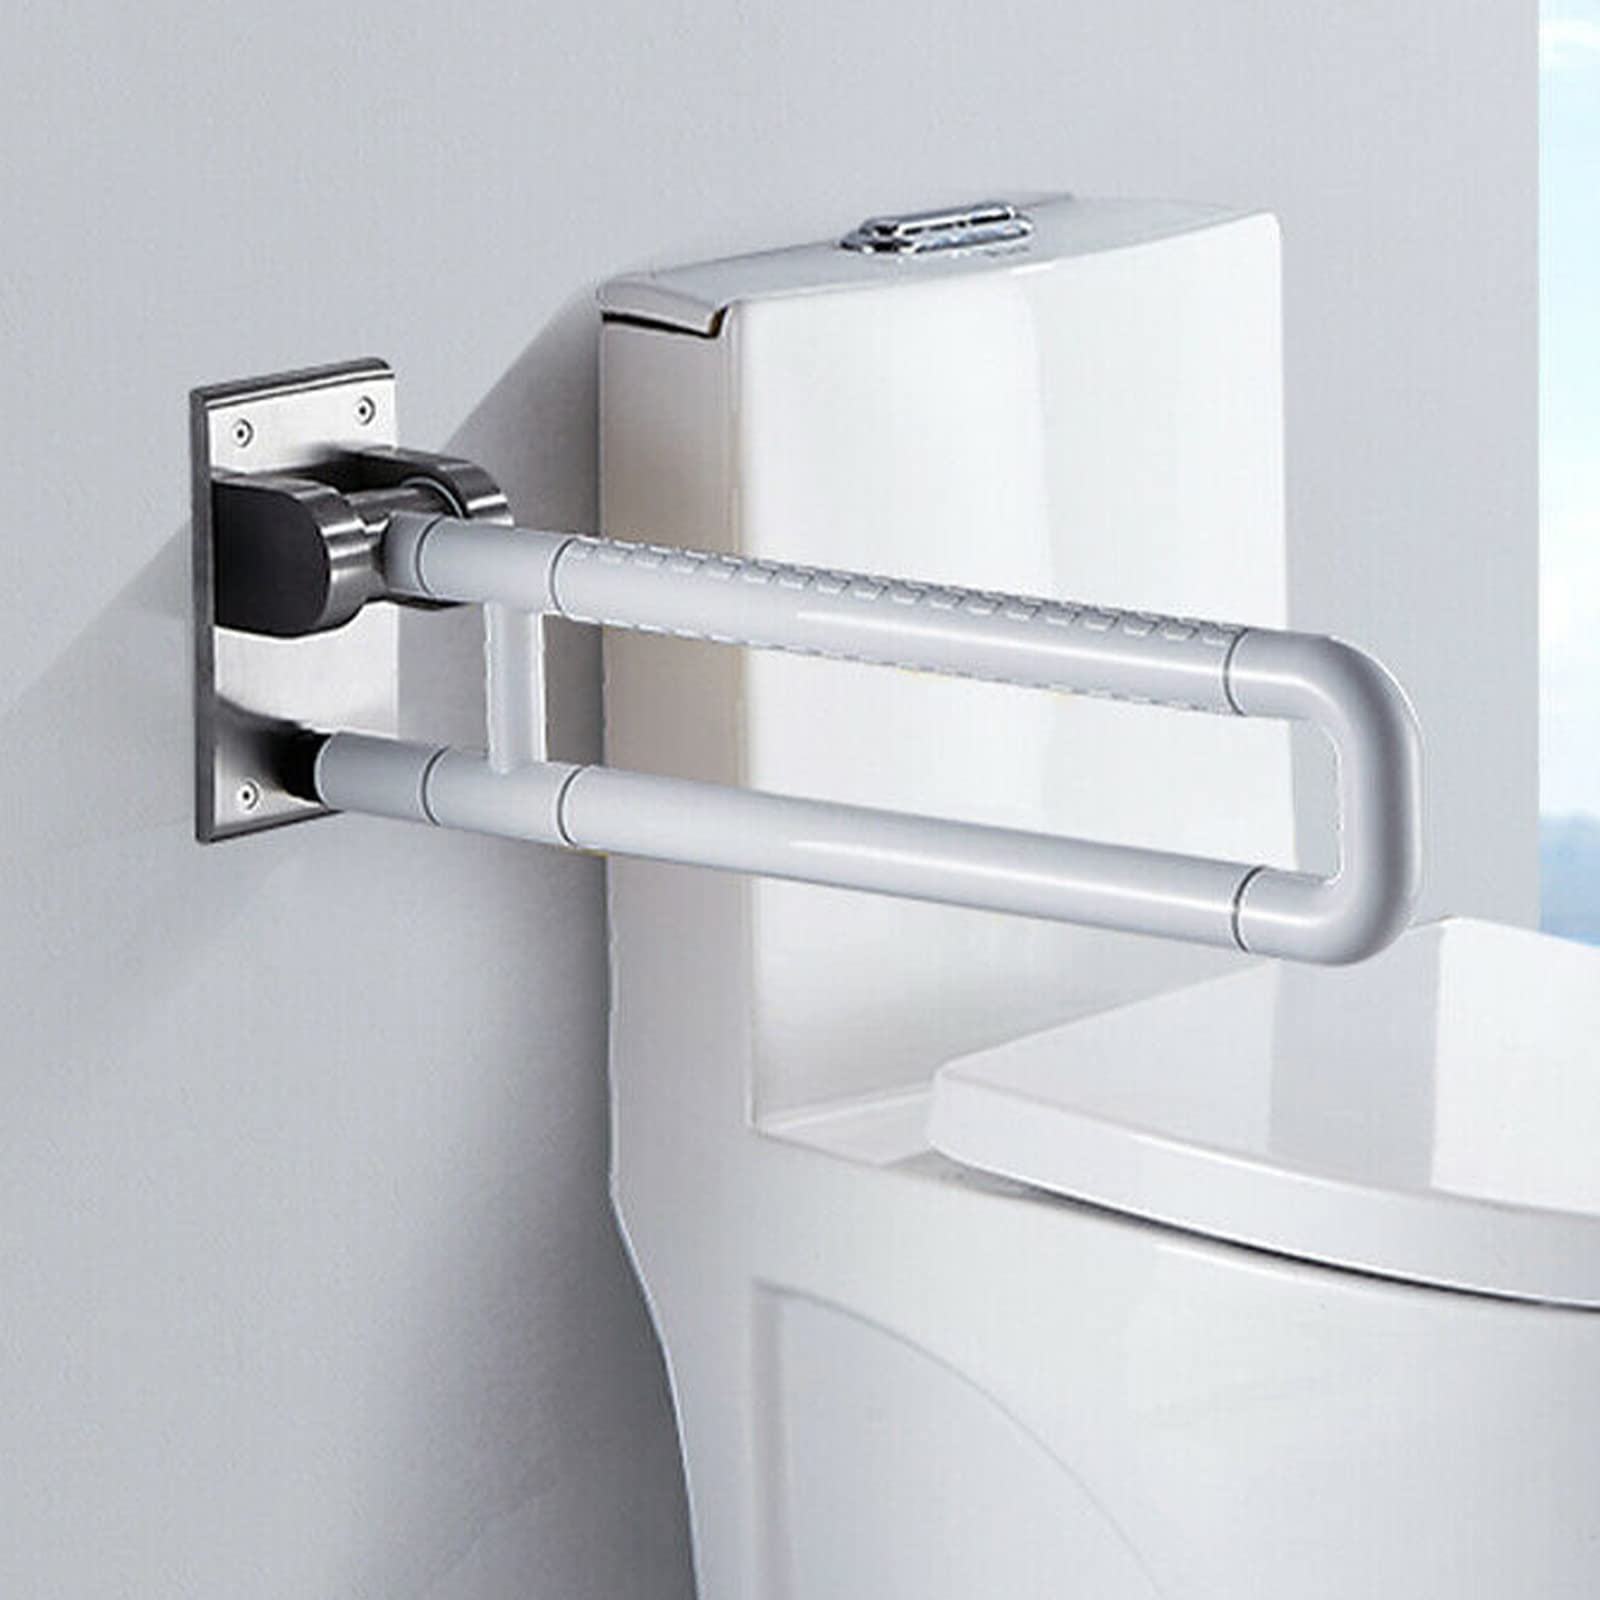 Toilettenstützgriff Wandmontage Bad WC Sicherheitsgriff Haltegriff Edelstahl